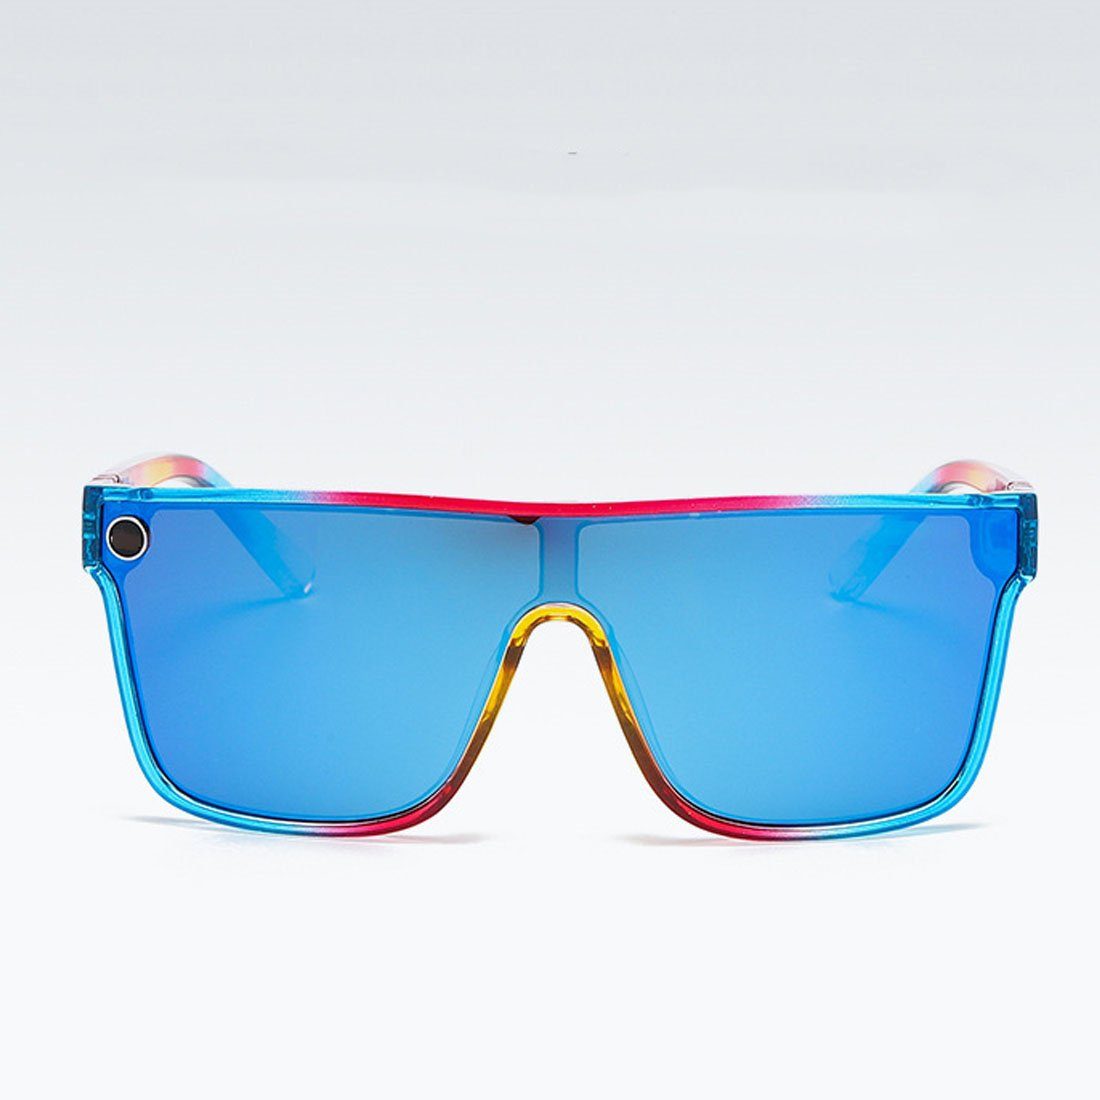 und Frauen, für Männer Outdoor-Sonnenbrillen Radsport-Sonnenbrillen DÖRÖY Sonnenbrille